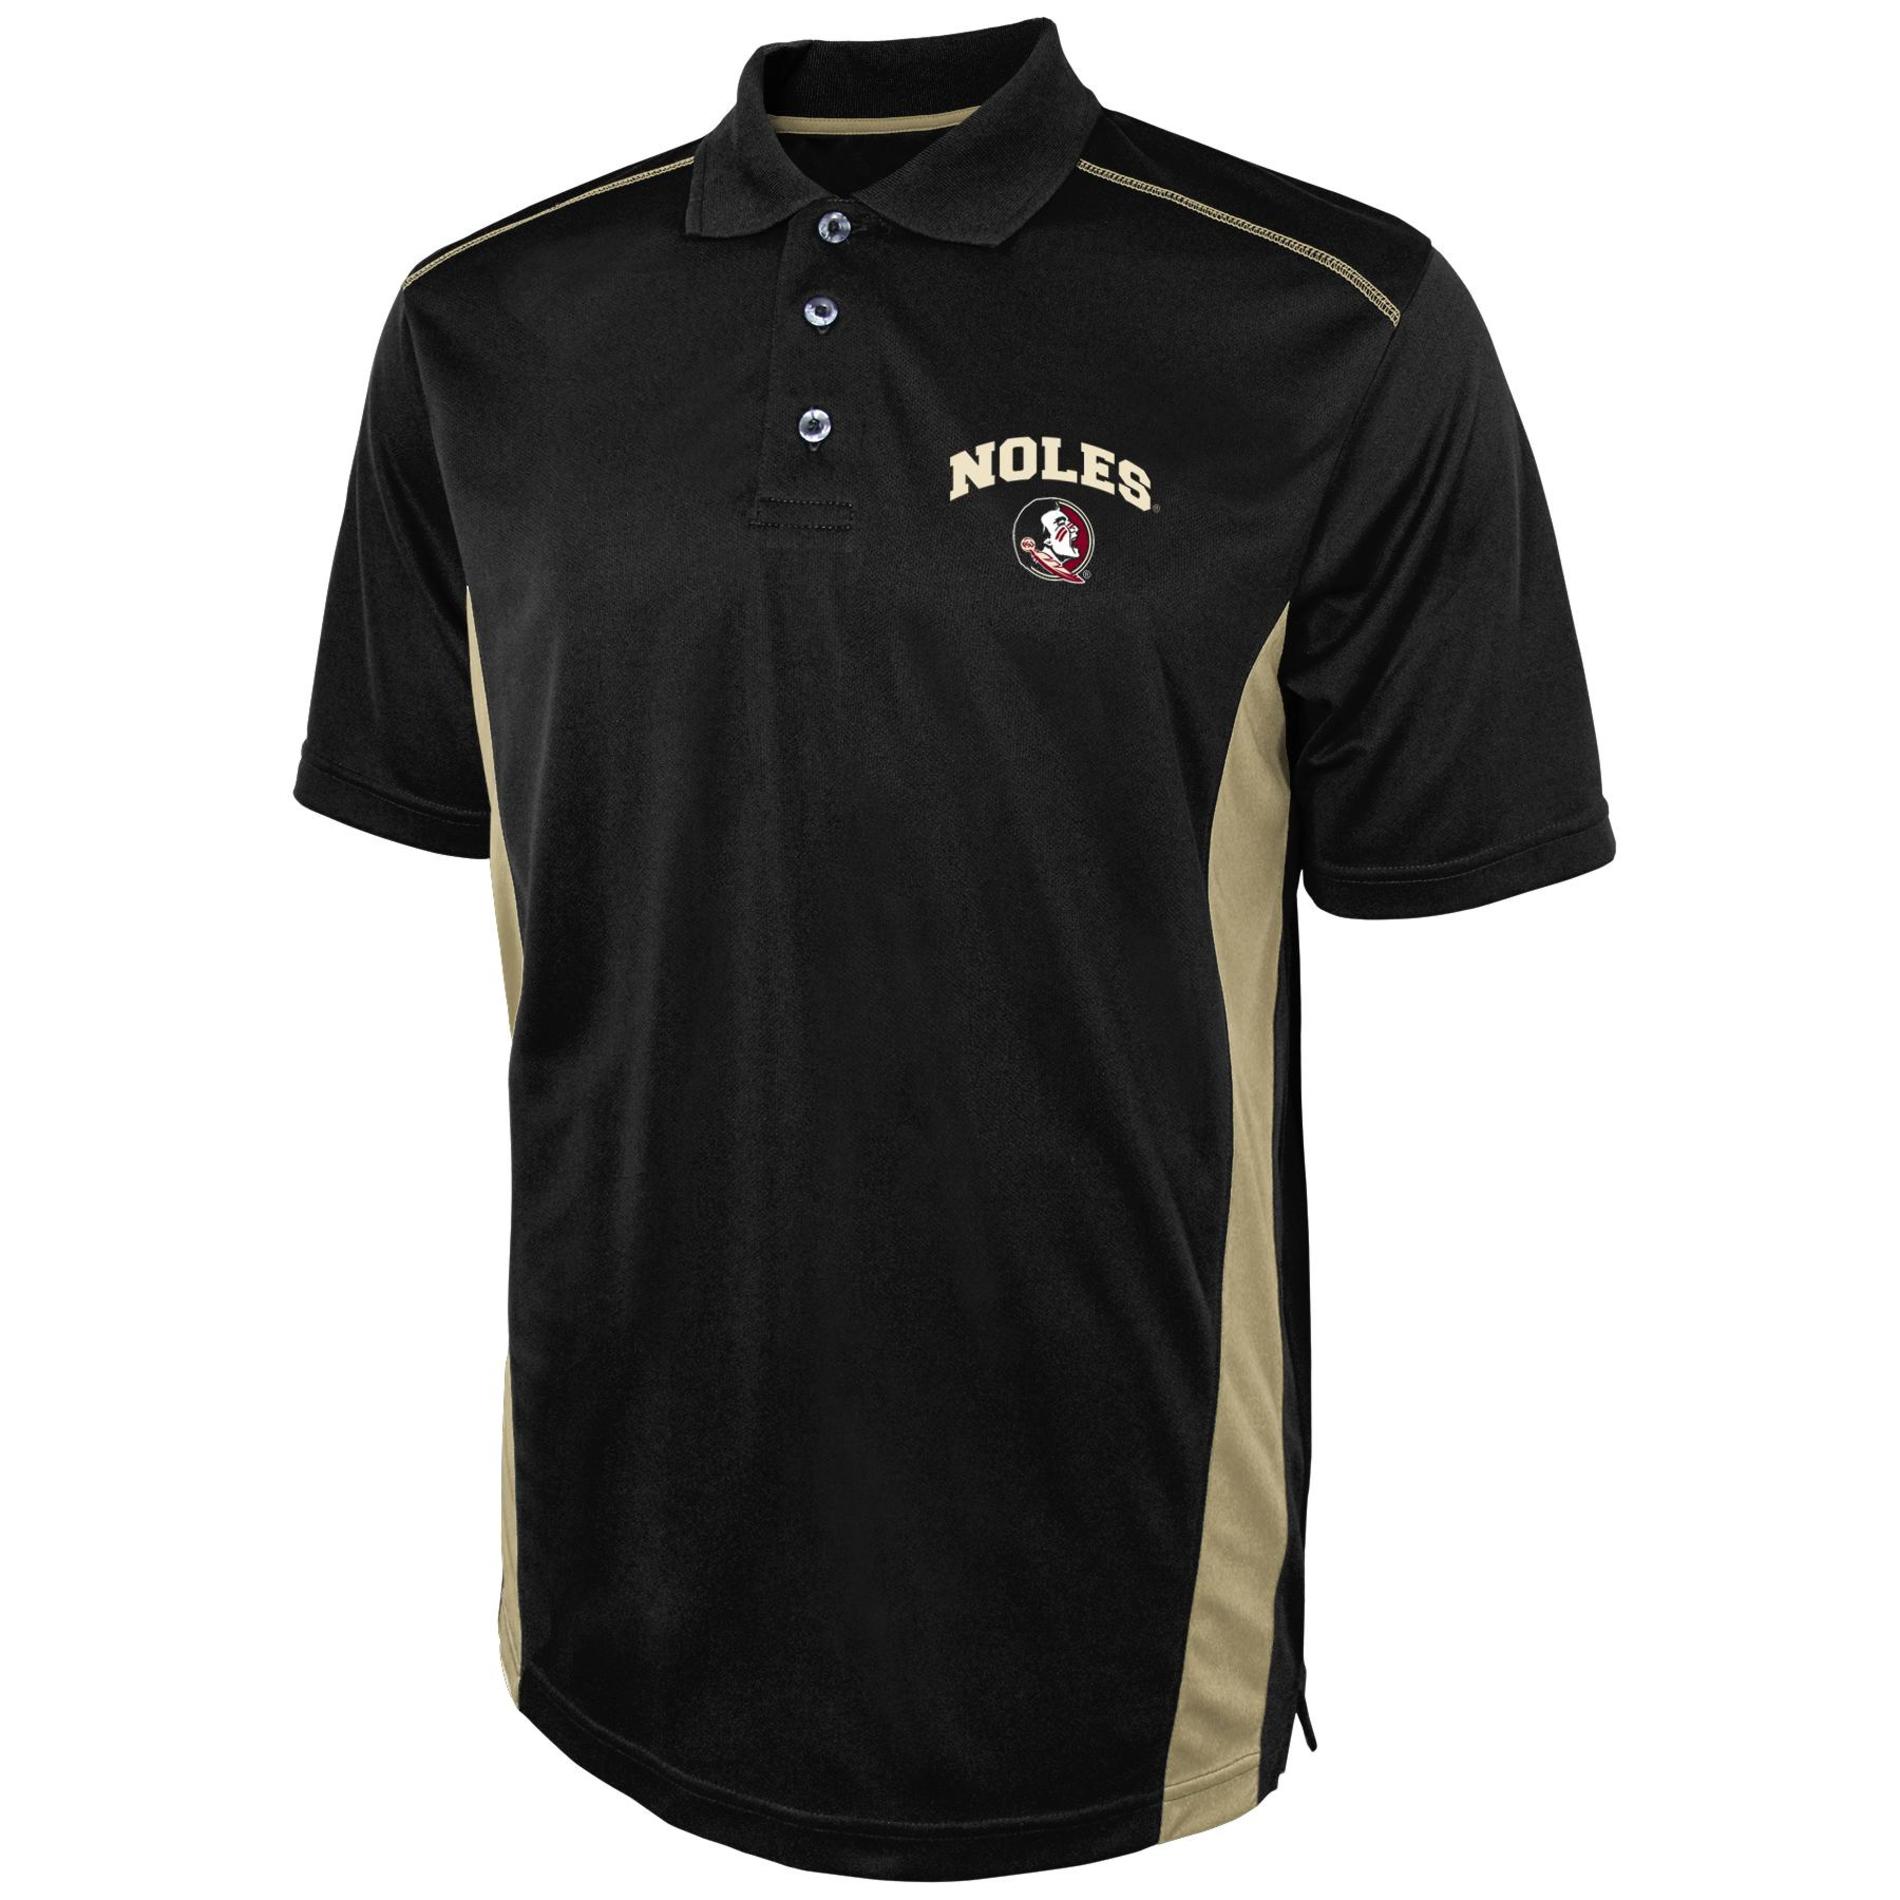 NCAA Men's Polo Shirt - Florida State Seminoles